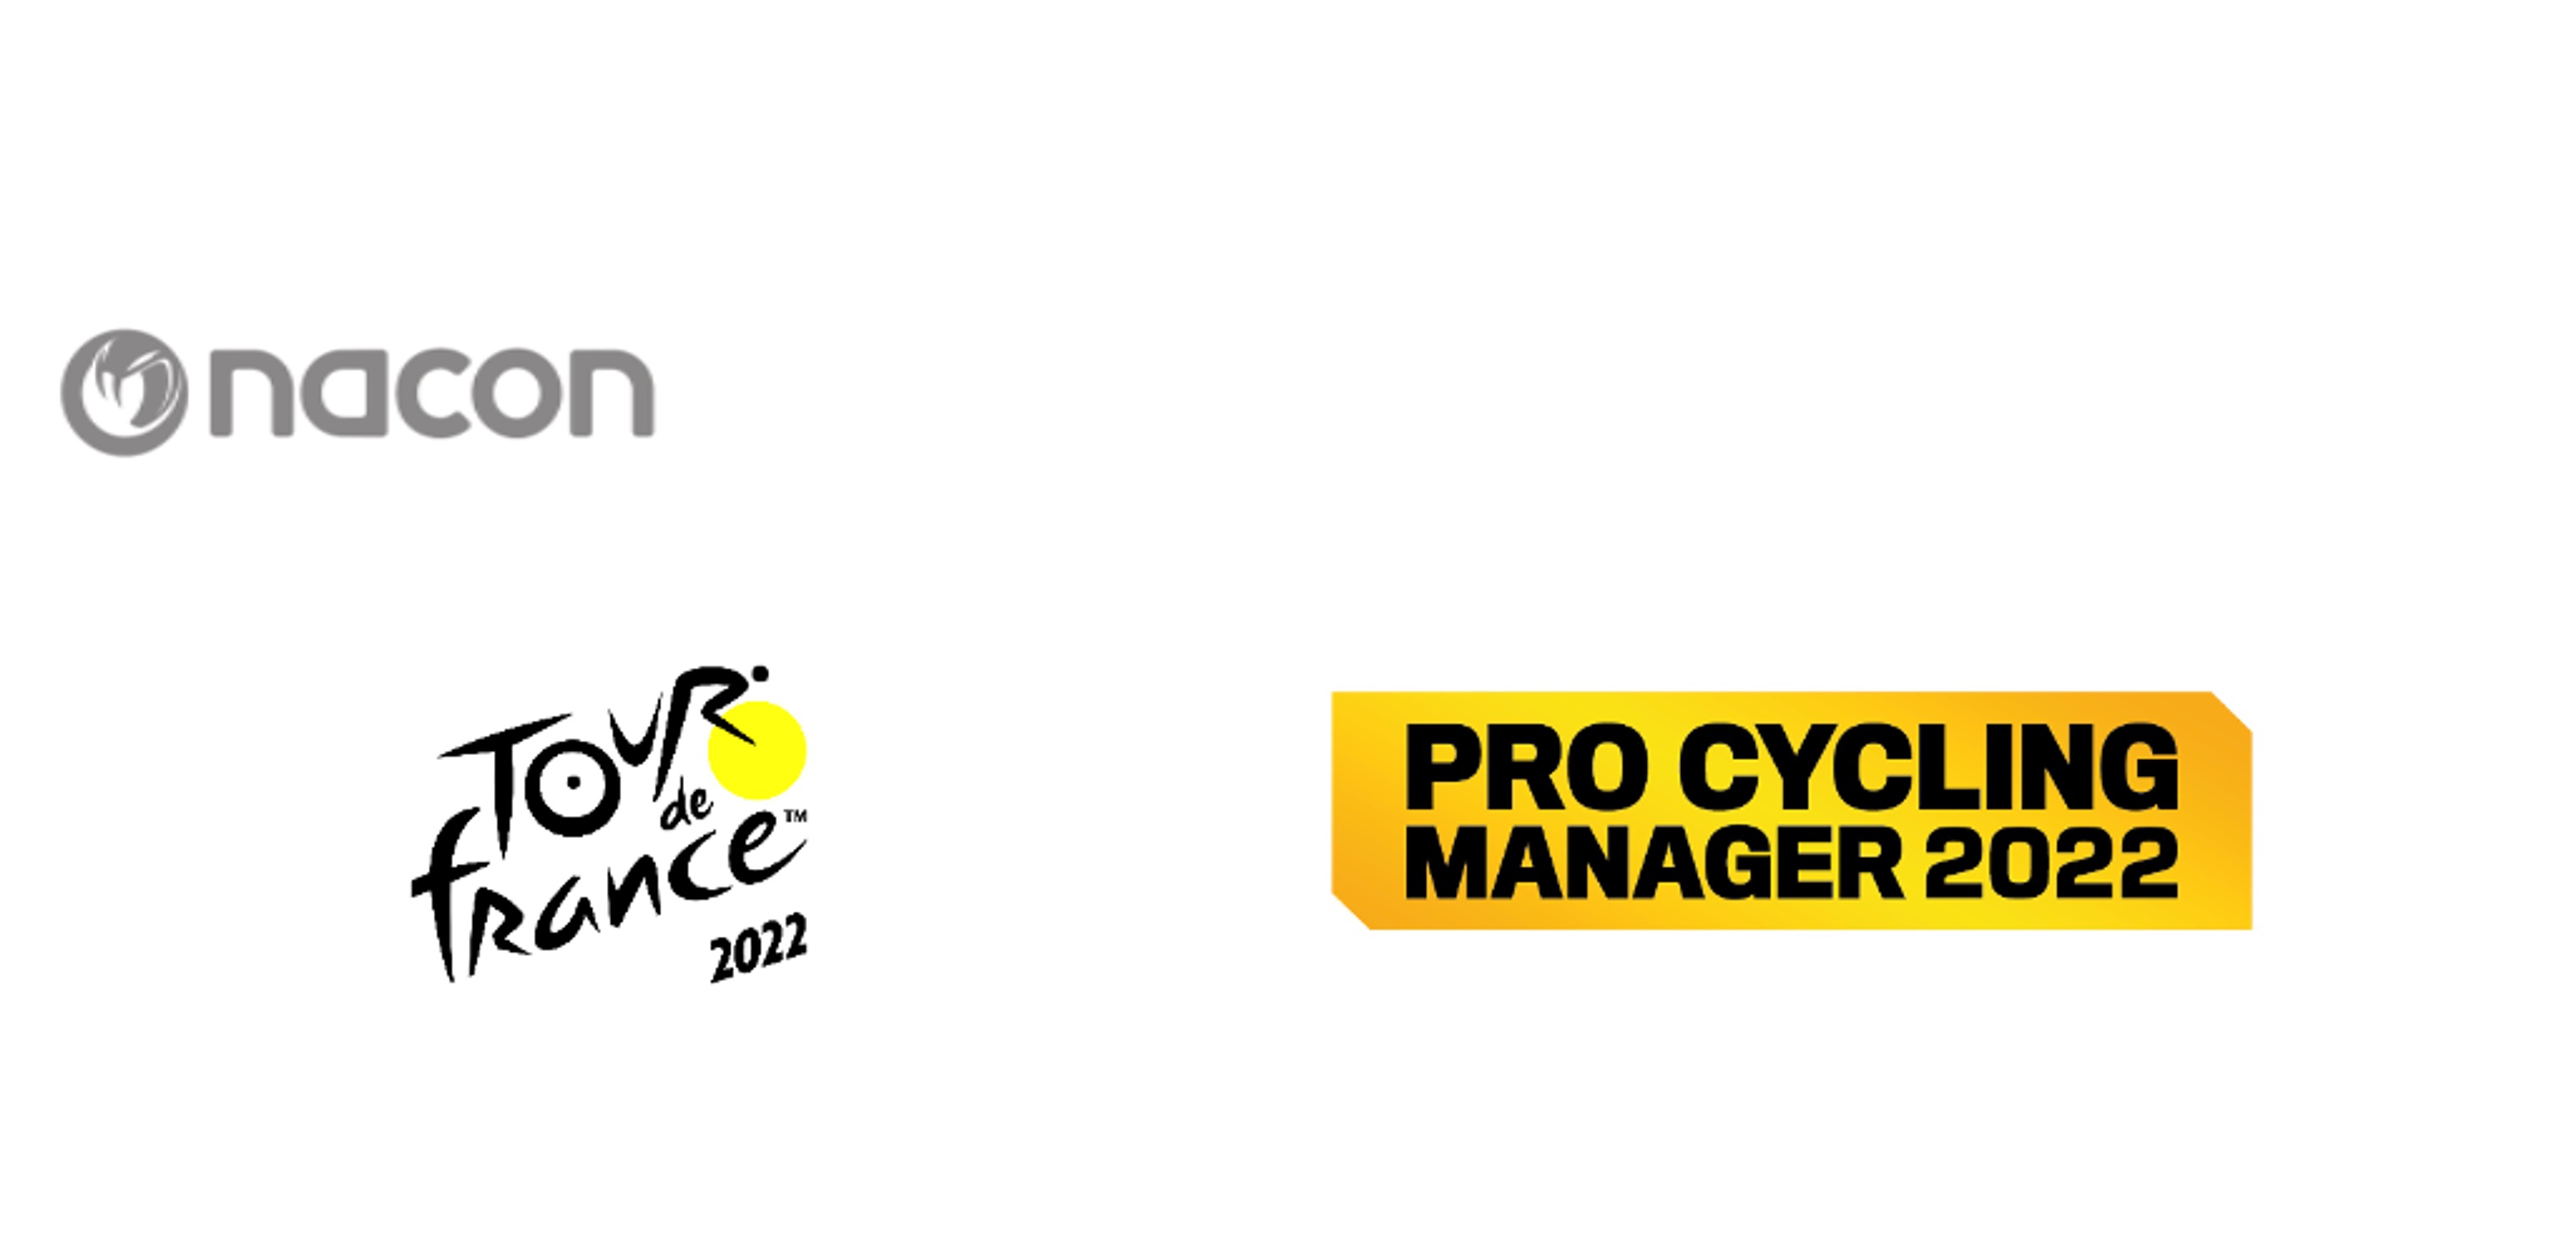 TOUR DE FRANCE 2022 E PRO CYCLING MANAGER 2022 ANNUNCIATI PER GIUGNO